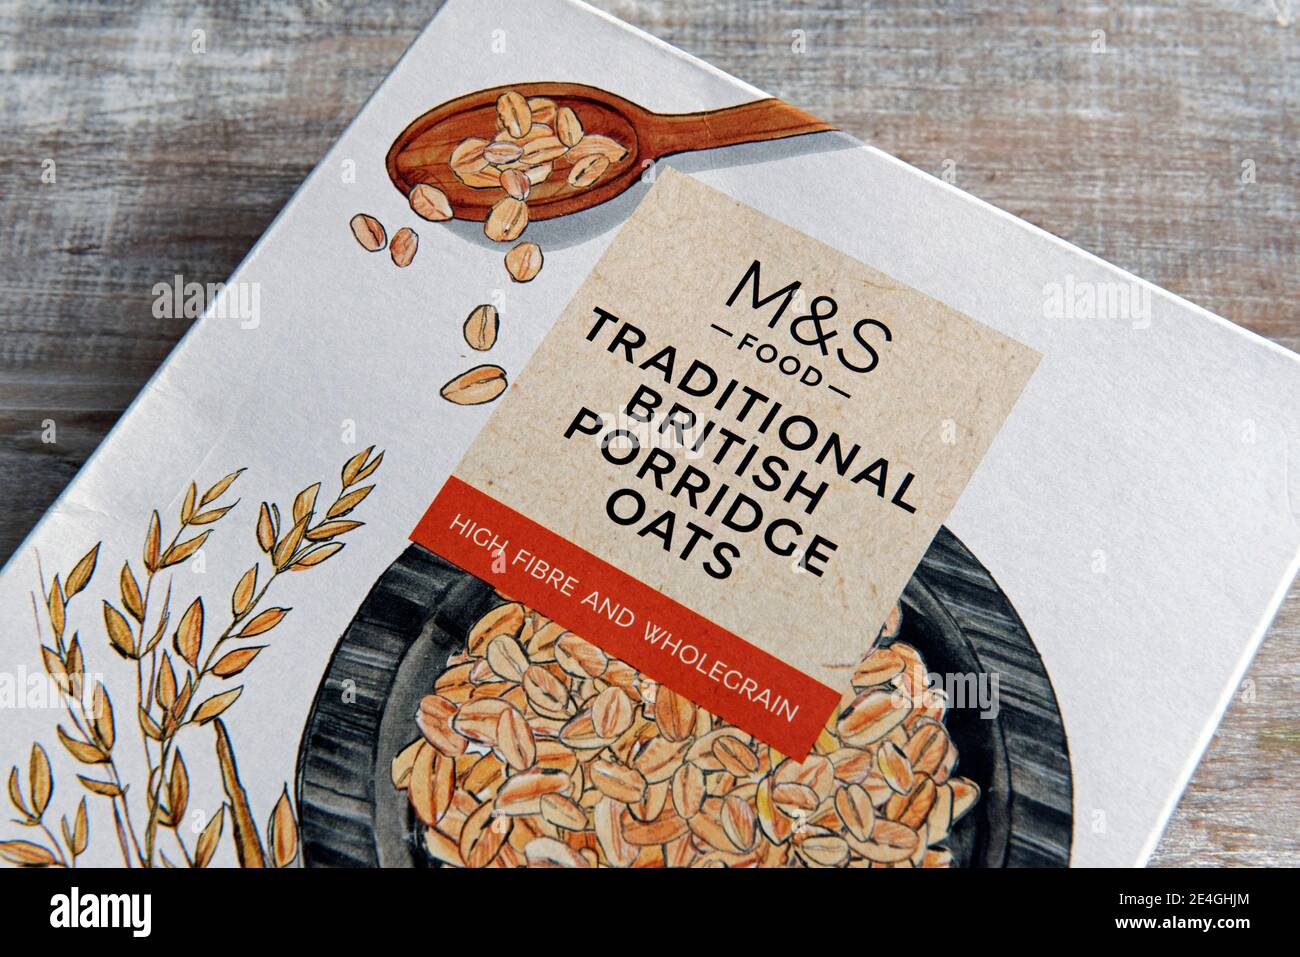 M&S traditionelle britische Haferflocken in Karton Packung auf Holz Hintergrund Stockfoto